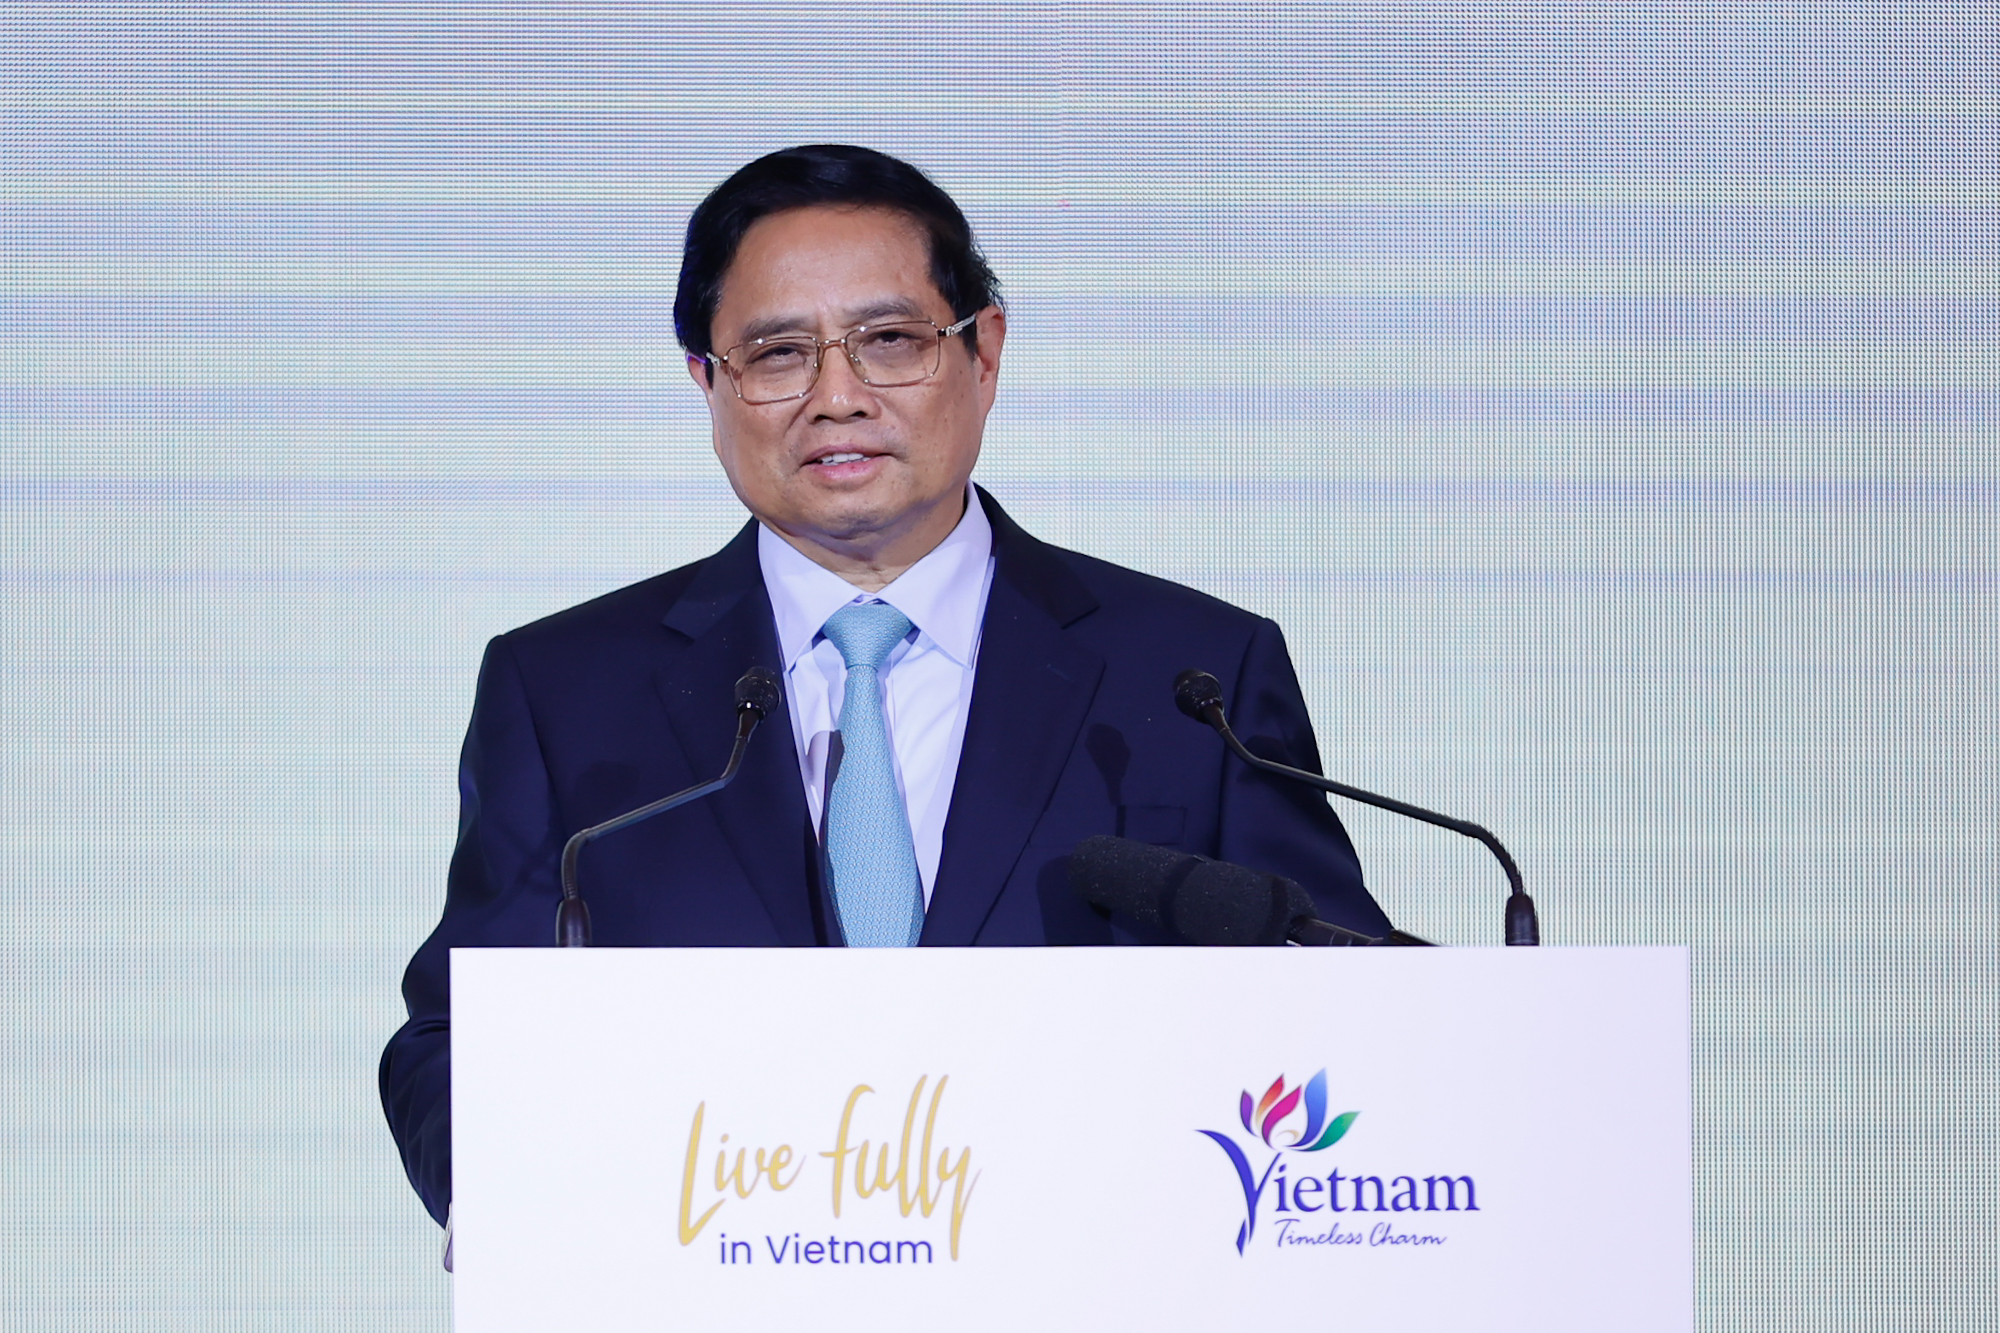 Thủ tướng mong rằng, hai bên sẽ cùng nhau đưa ra những chương trình hợp tác, dự án cụ thể, thiết thực, đưa du lịch Việt Nam và Hàn Quốc lên một tầm cao mới - Ảnh: VGP/Nhật Bắc